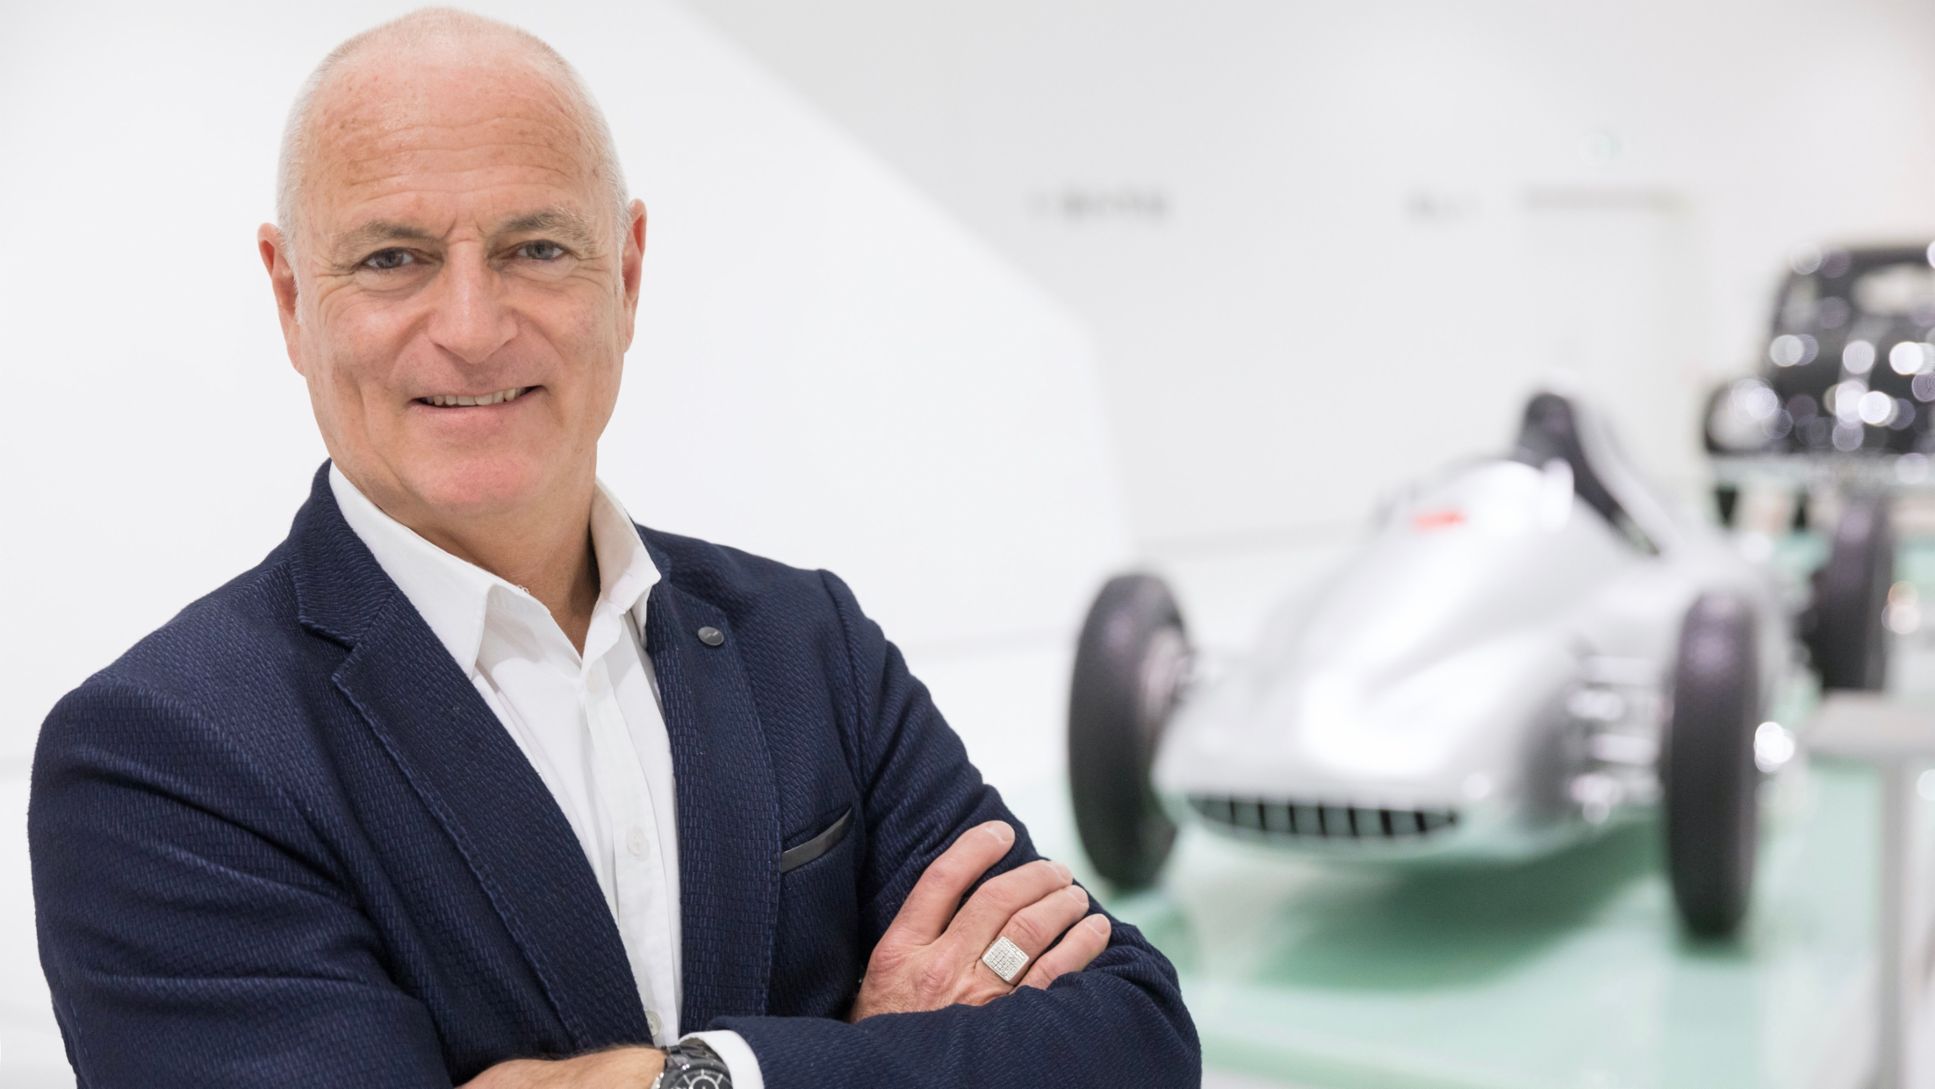 Markus Günthardt, Turnierdirektor des Porsche Tennis Grand Prix, 2021, Porsche AG